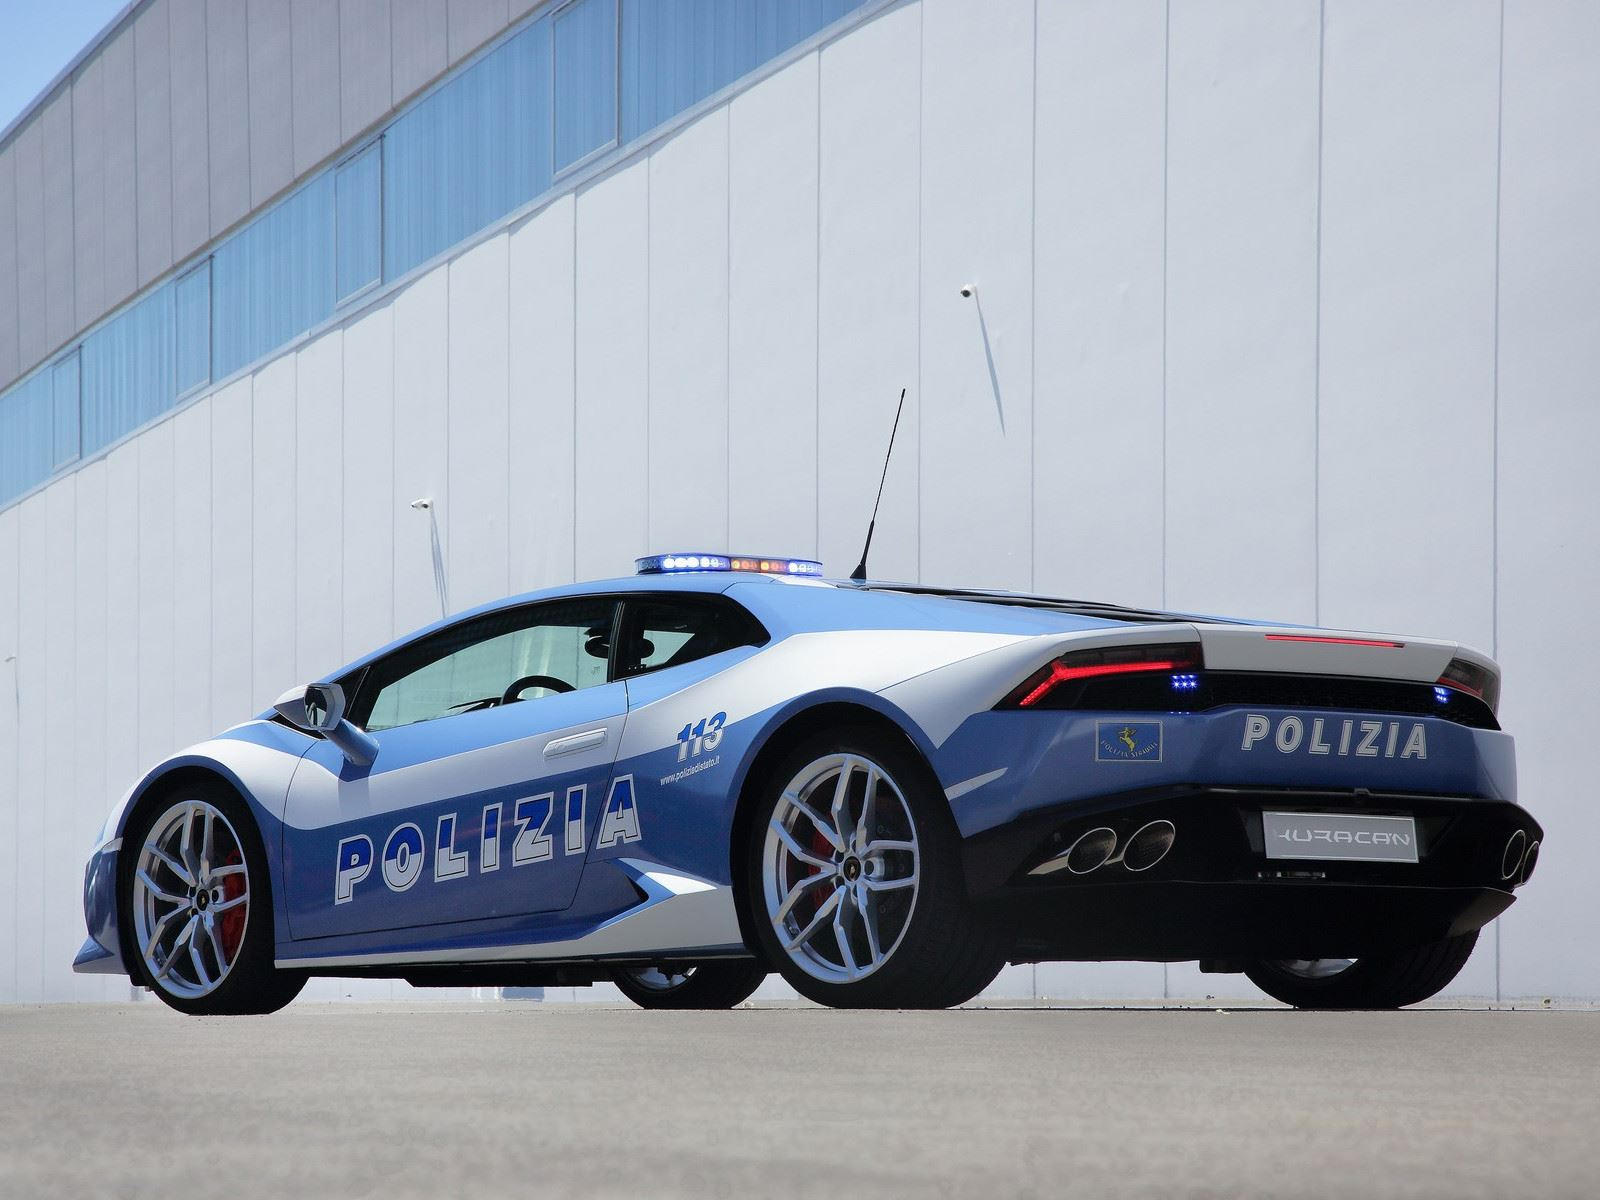 "بالصور" أكثر 10 سيارات شرطة تميزا حول العالم 53